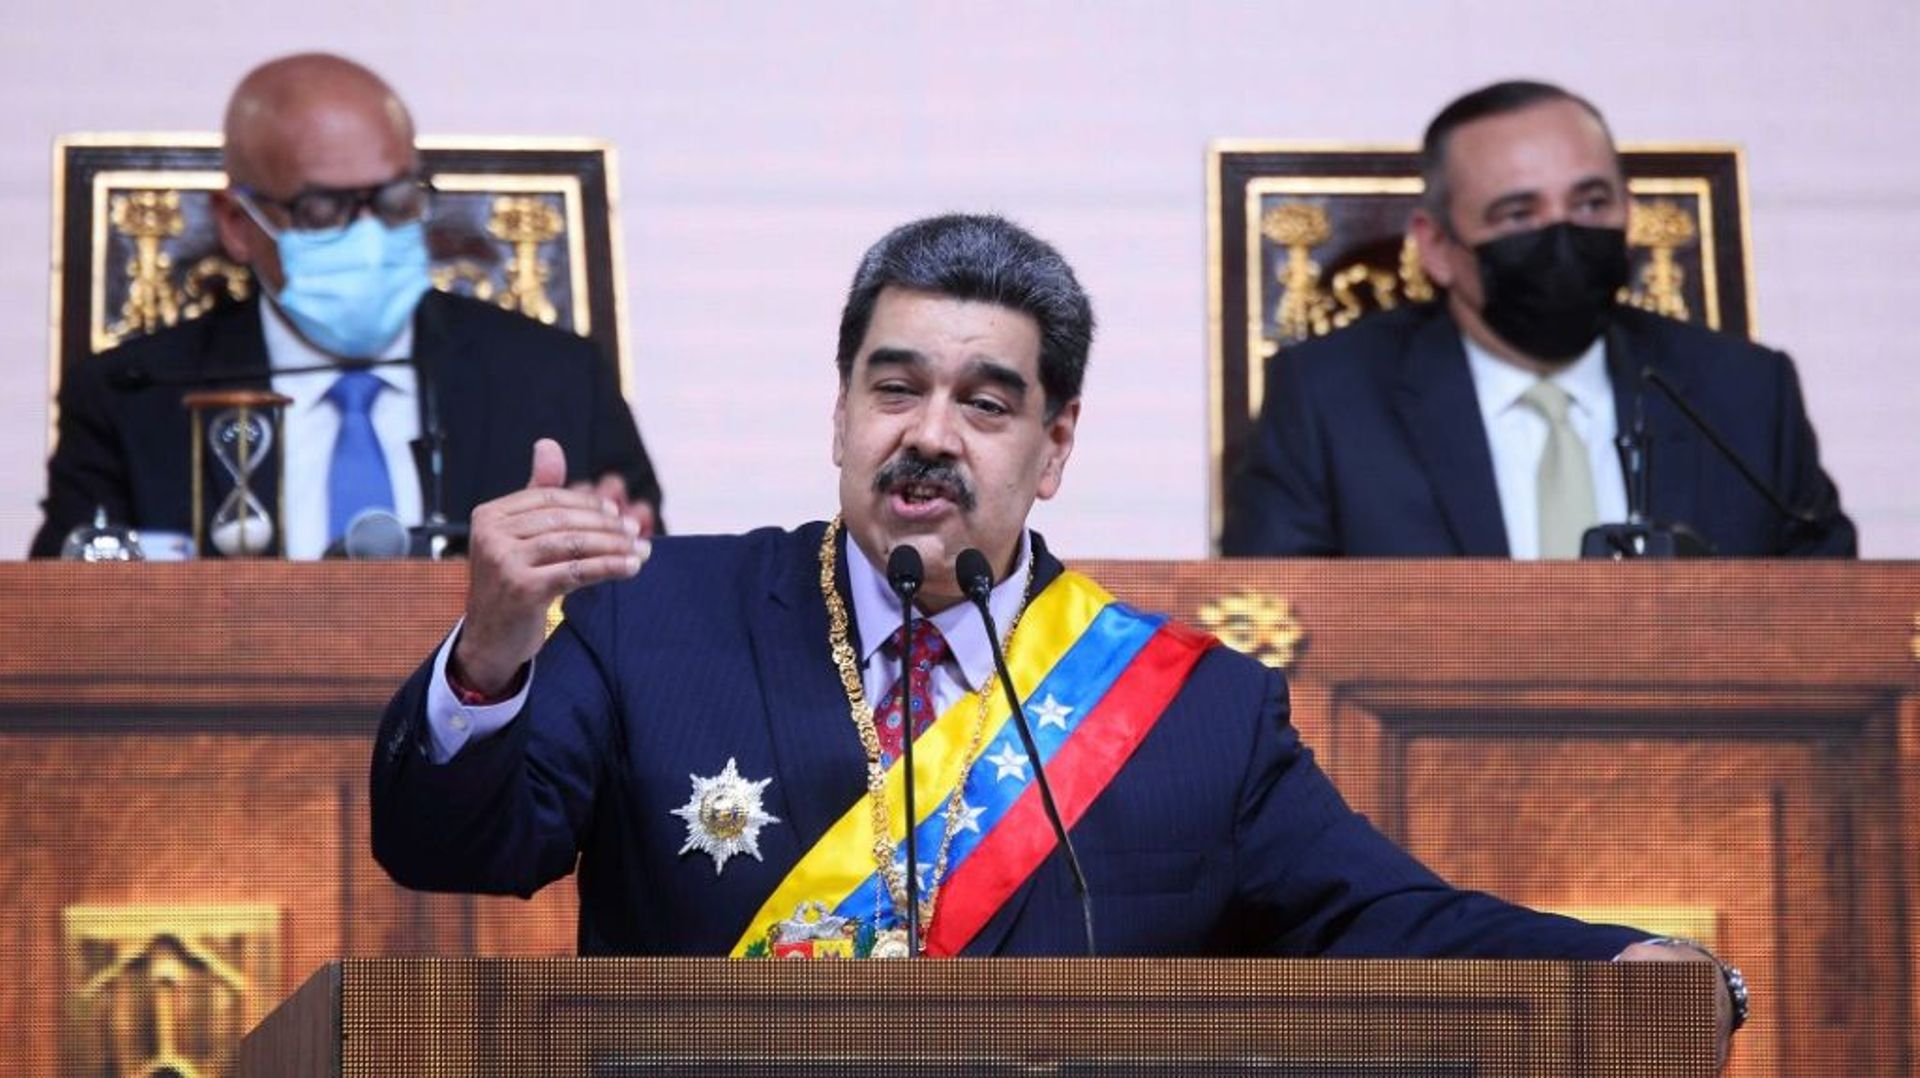 Le président du Venezuela Maduro tient un discours devant l'Assemblée nationale à Caracas le 15 janvier 2022